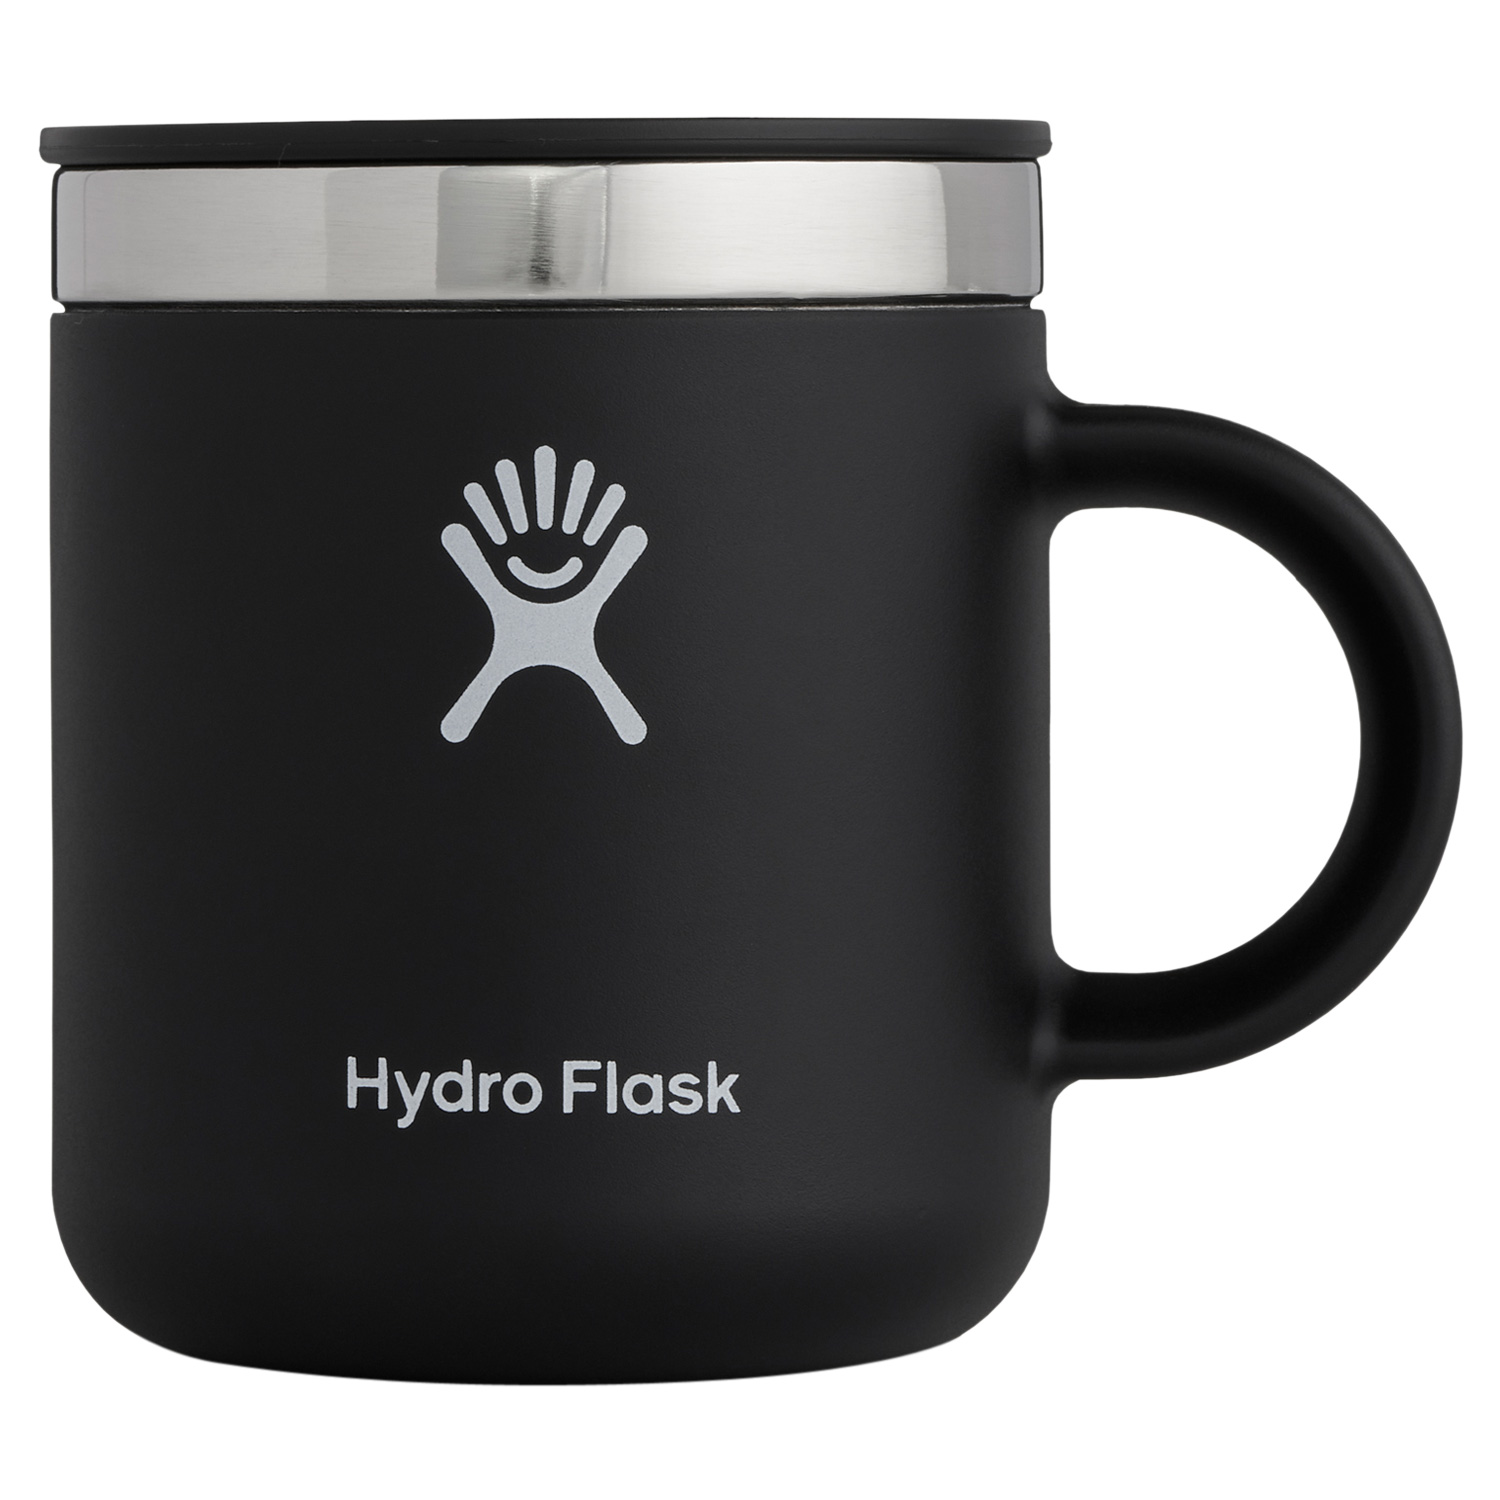 Hydro Flask ハイドロフラスク 6oz コーヒーマグ マグカップ コーヒーカップ 177m...